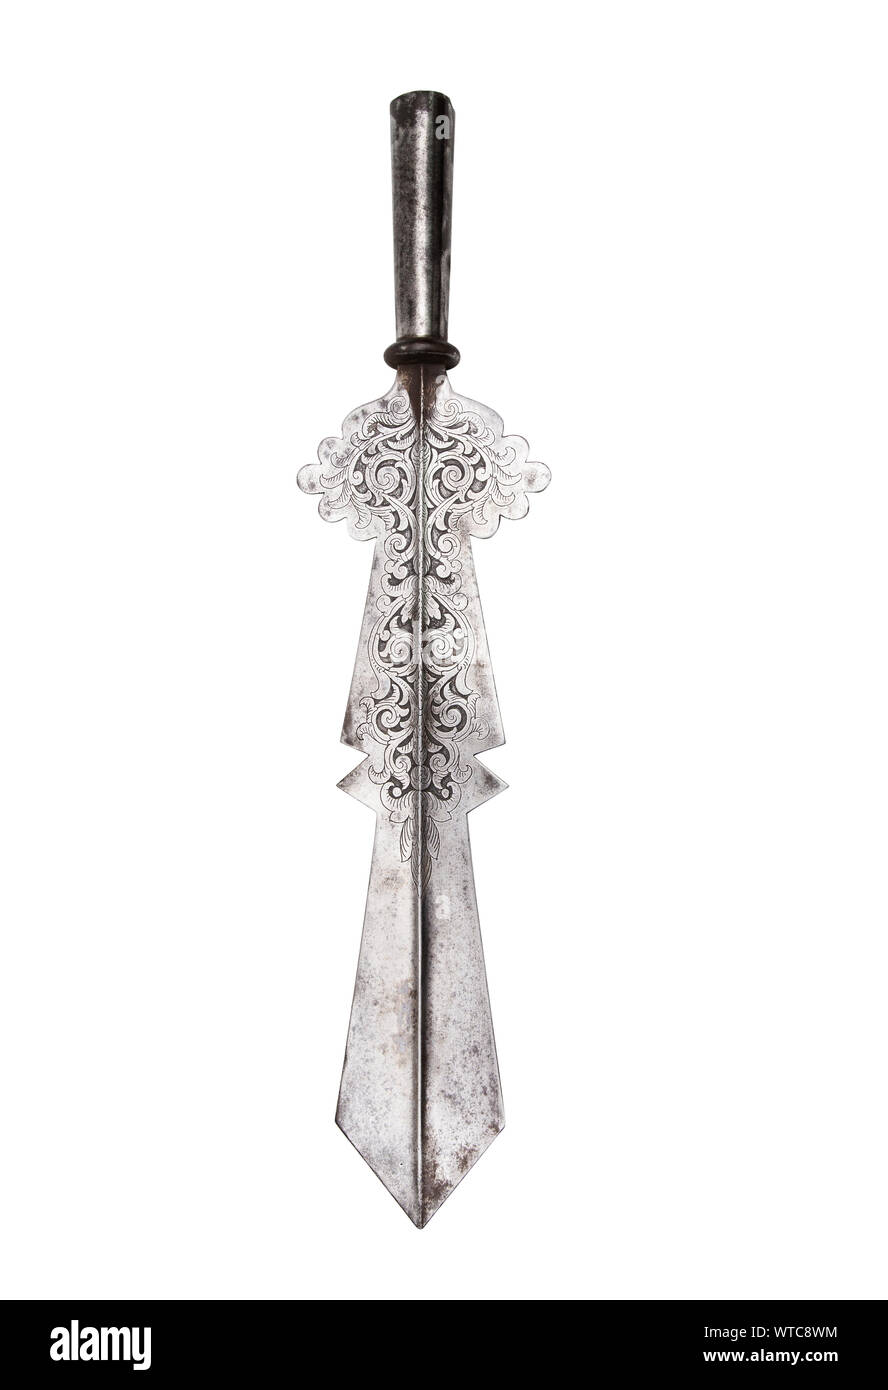 Un partigiano Vittoriano (partizan) pole-superiore braccio nel XVI secolo e in stile decorato con motivo floreale realizzato con incisione. Questo tipo di palo armi fu utilizzare Foto Stock